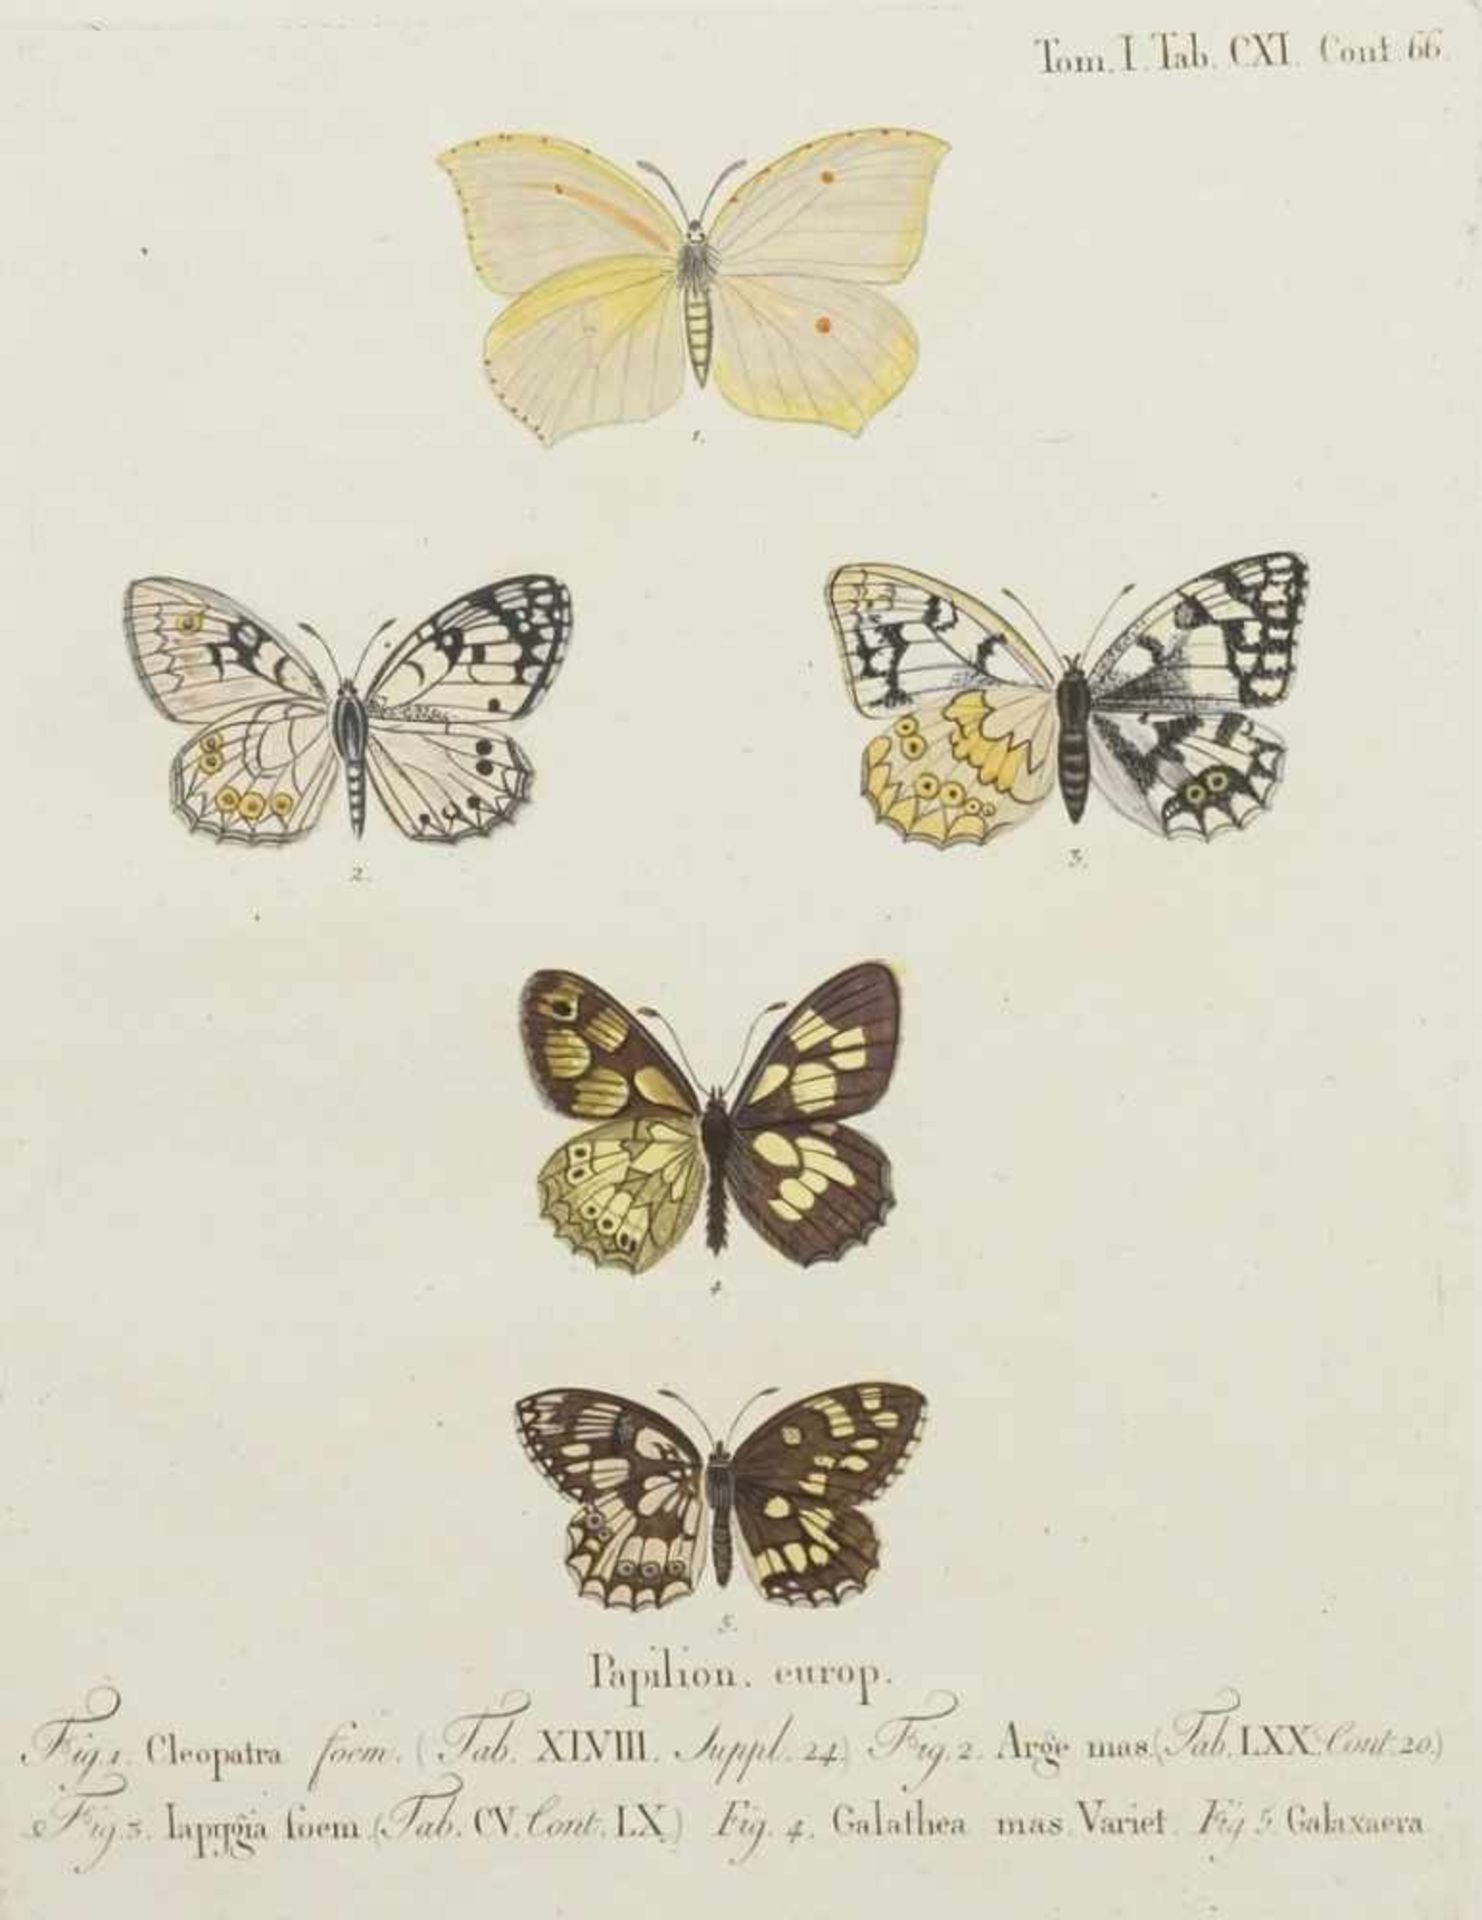 Naturkundliches Blatt, "Papilion. europ. (Europäische Schmetterlinge)"